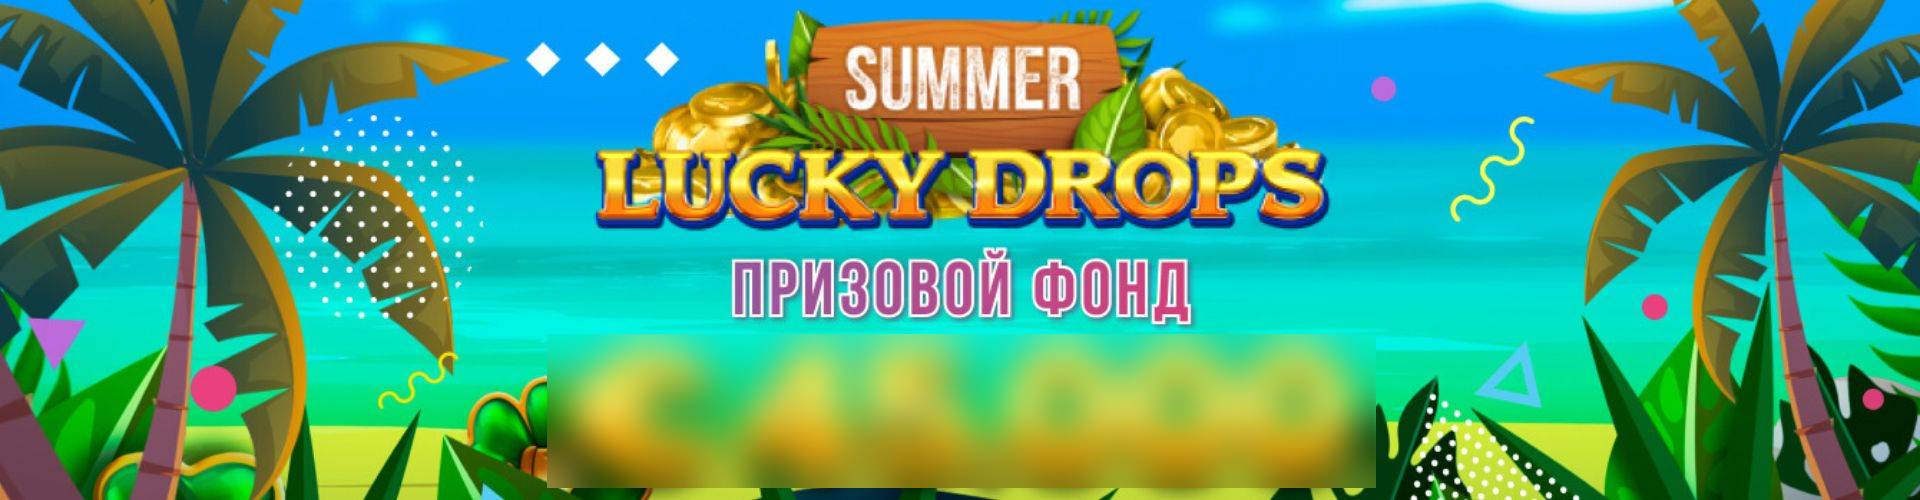 Summer Lucky Drops в Booi casino